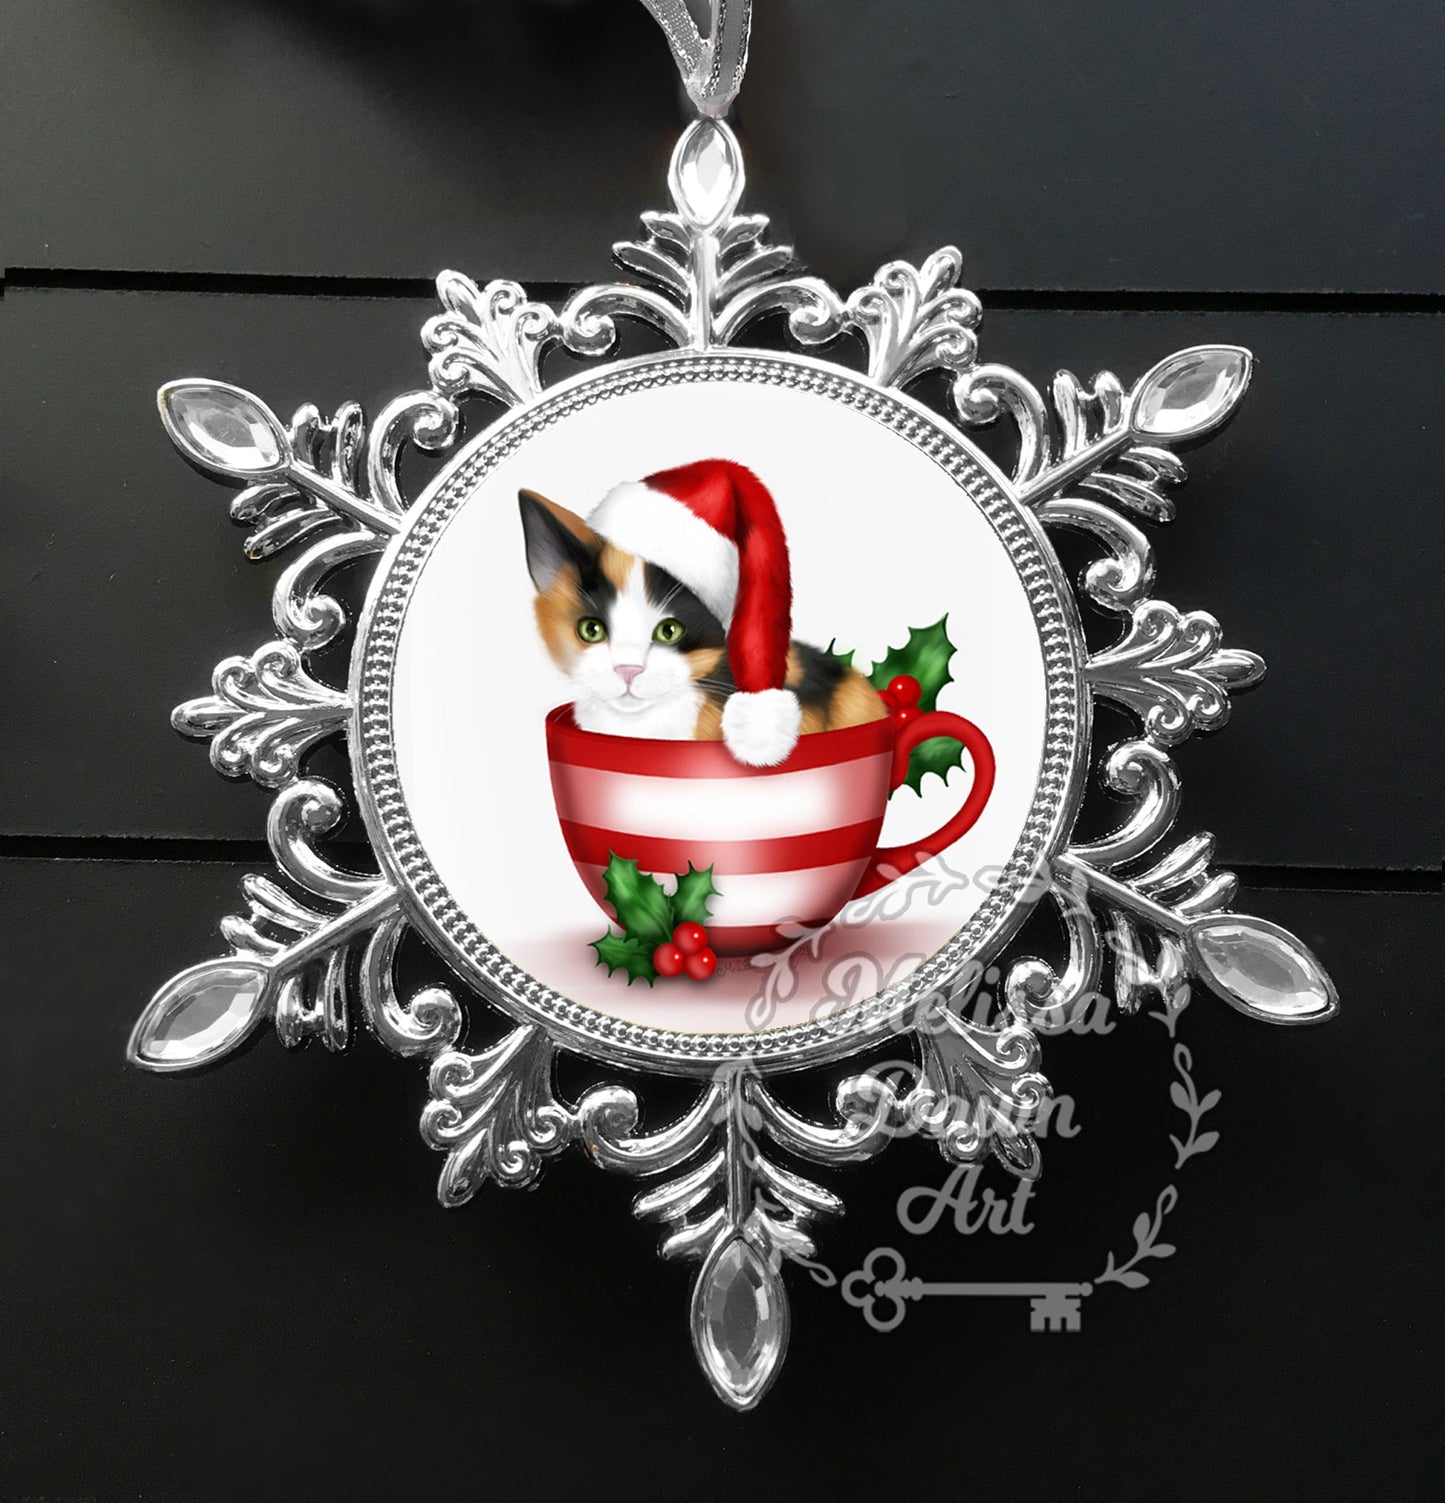 Christmas Ornament / Cat Ornament / Cat Christmas Ornament / Calico Cat Ornament / Cute Cat Ornament / Calico Cat Art / Calico Ornament